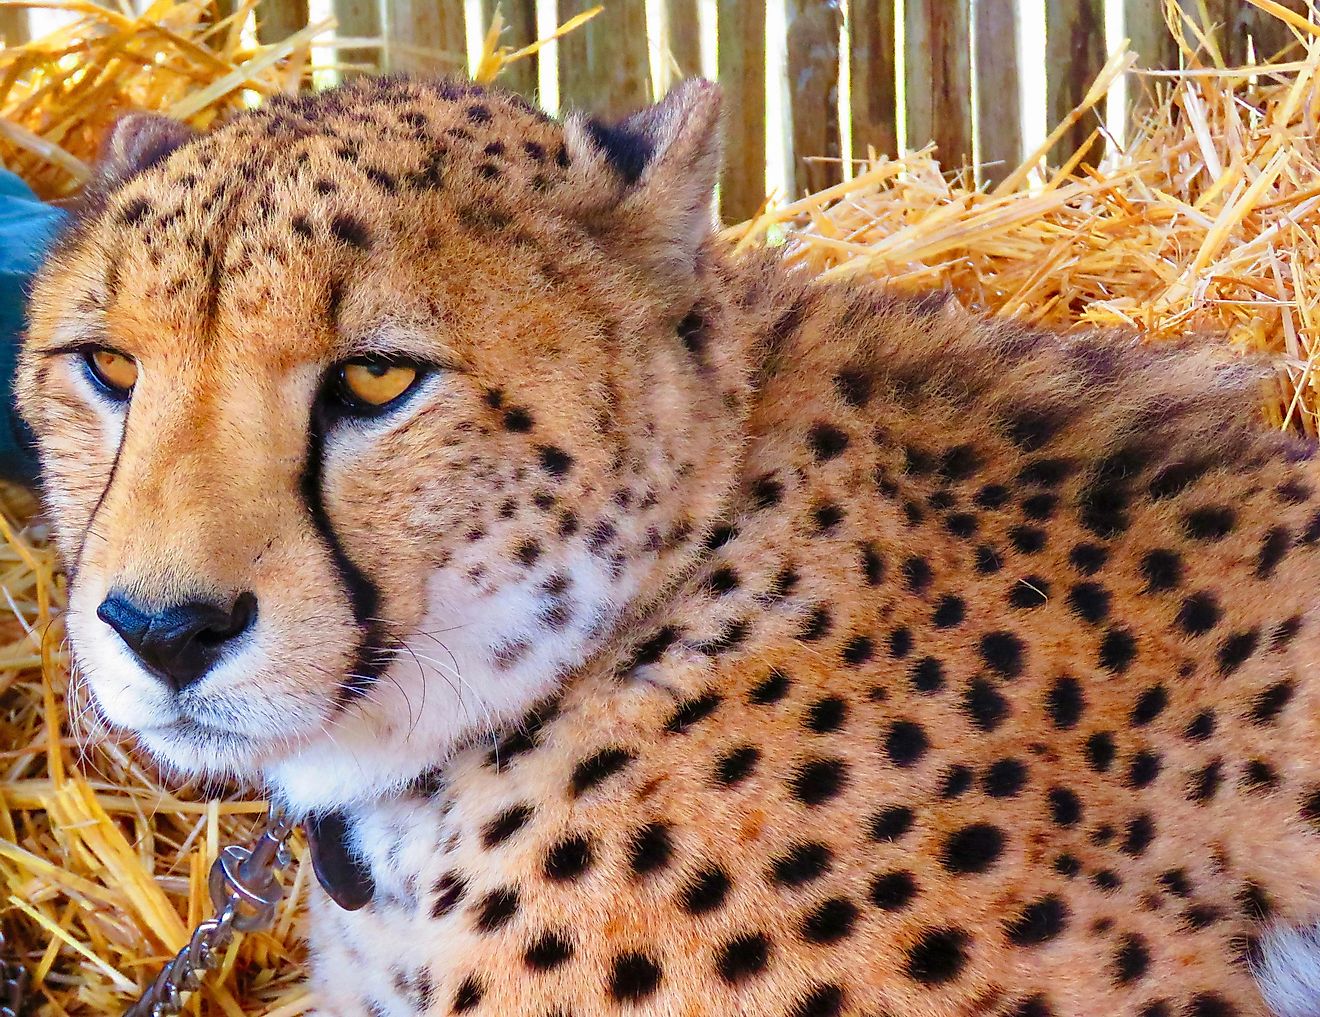 A cheetah at Cheetah Outreach used as an ambassador for educational purposes. Photo credit: Arijit Nag.